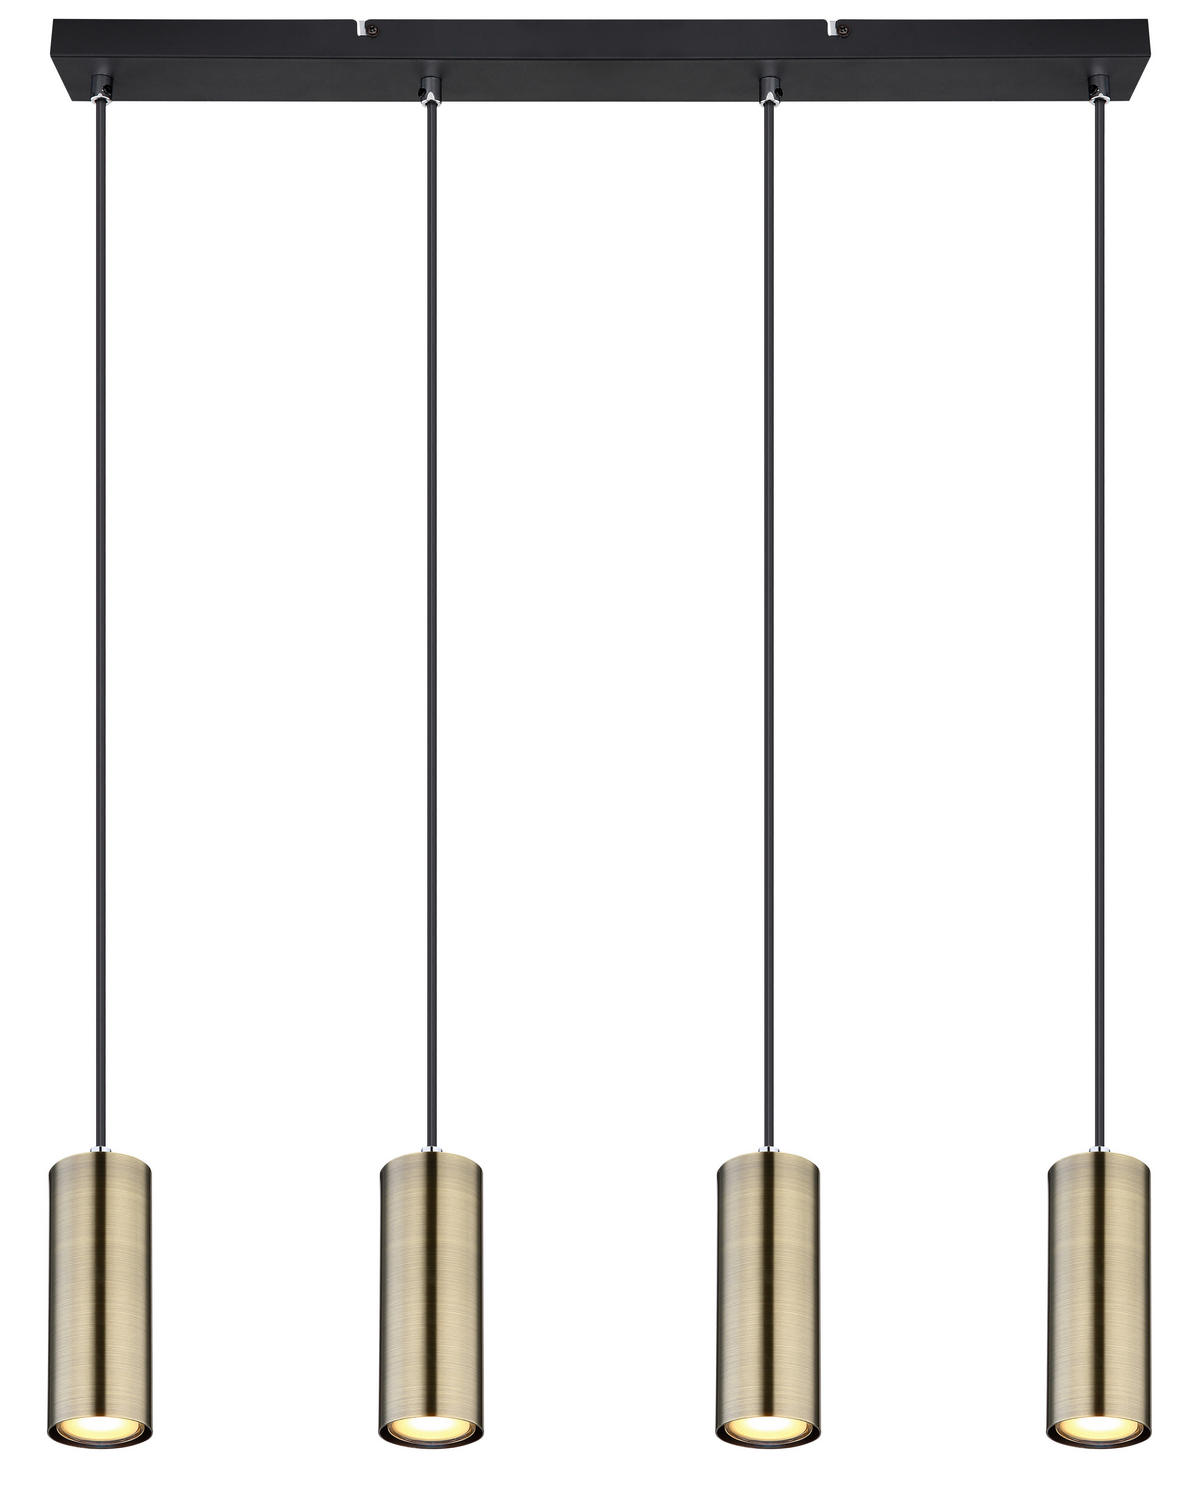 HÄNGELEUCHTE 65/6/120 cm   - Messingfarben/Schwarz, Design, Metall (65/6/120cm) - Globo